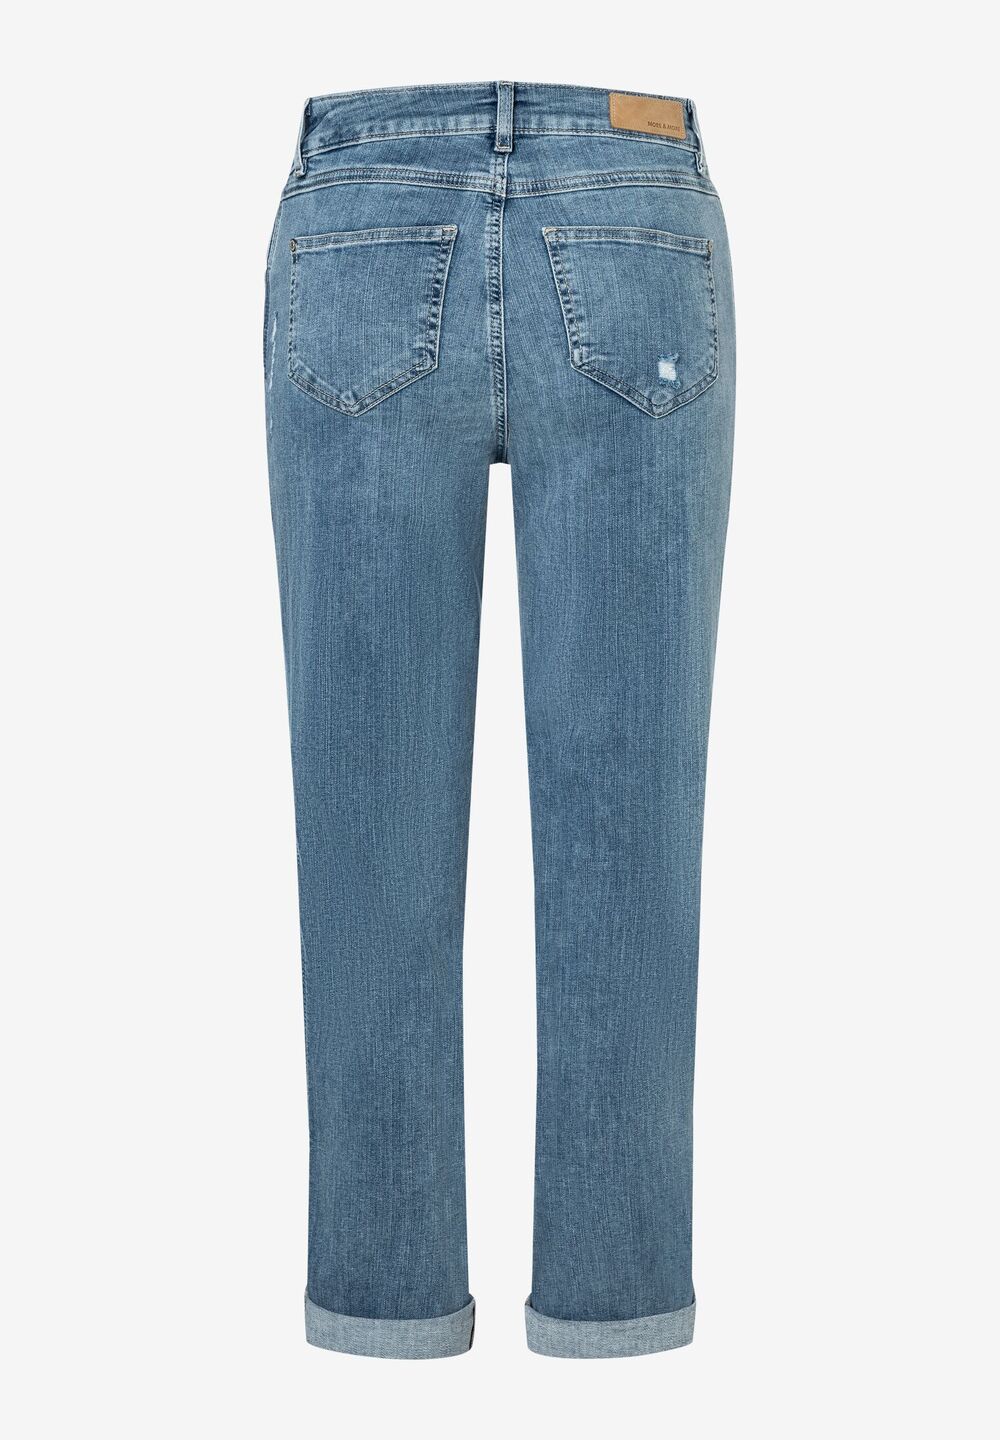 Jeans mit destroyed Stellen, Frühjahrs-Kollektion, denim Detailansicht 2